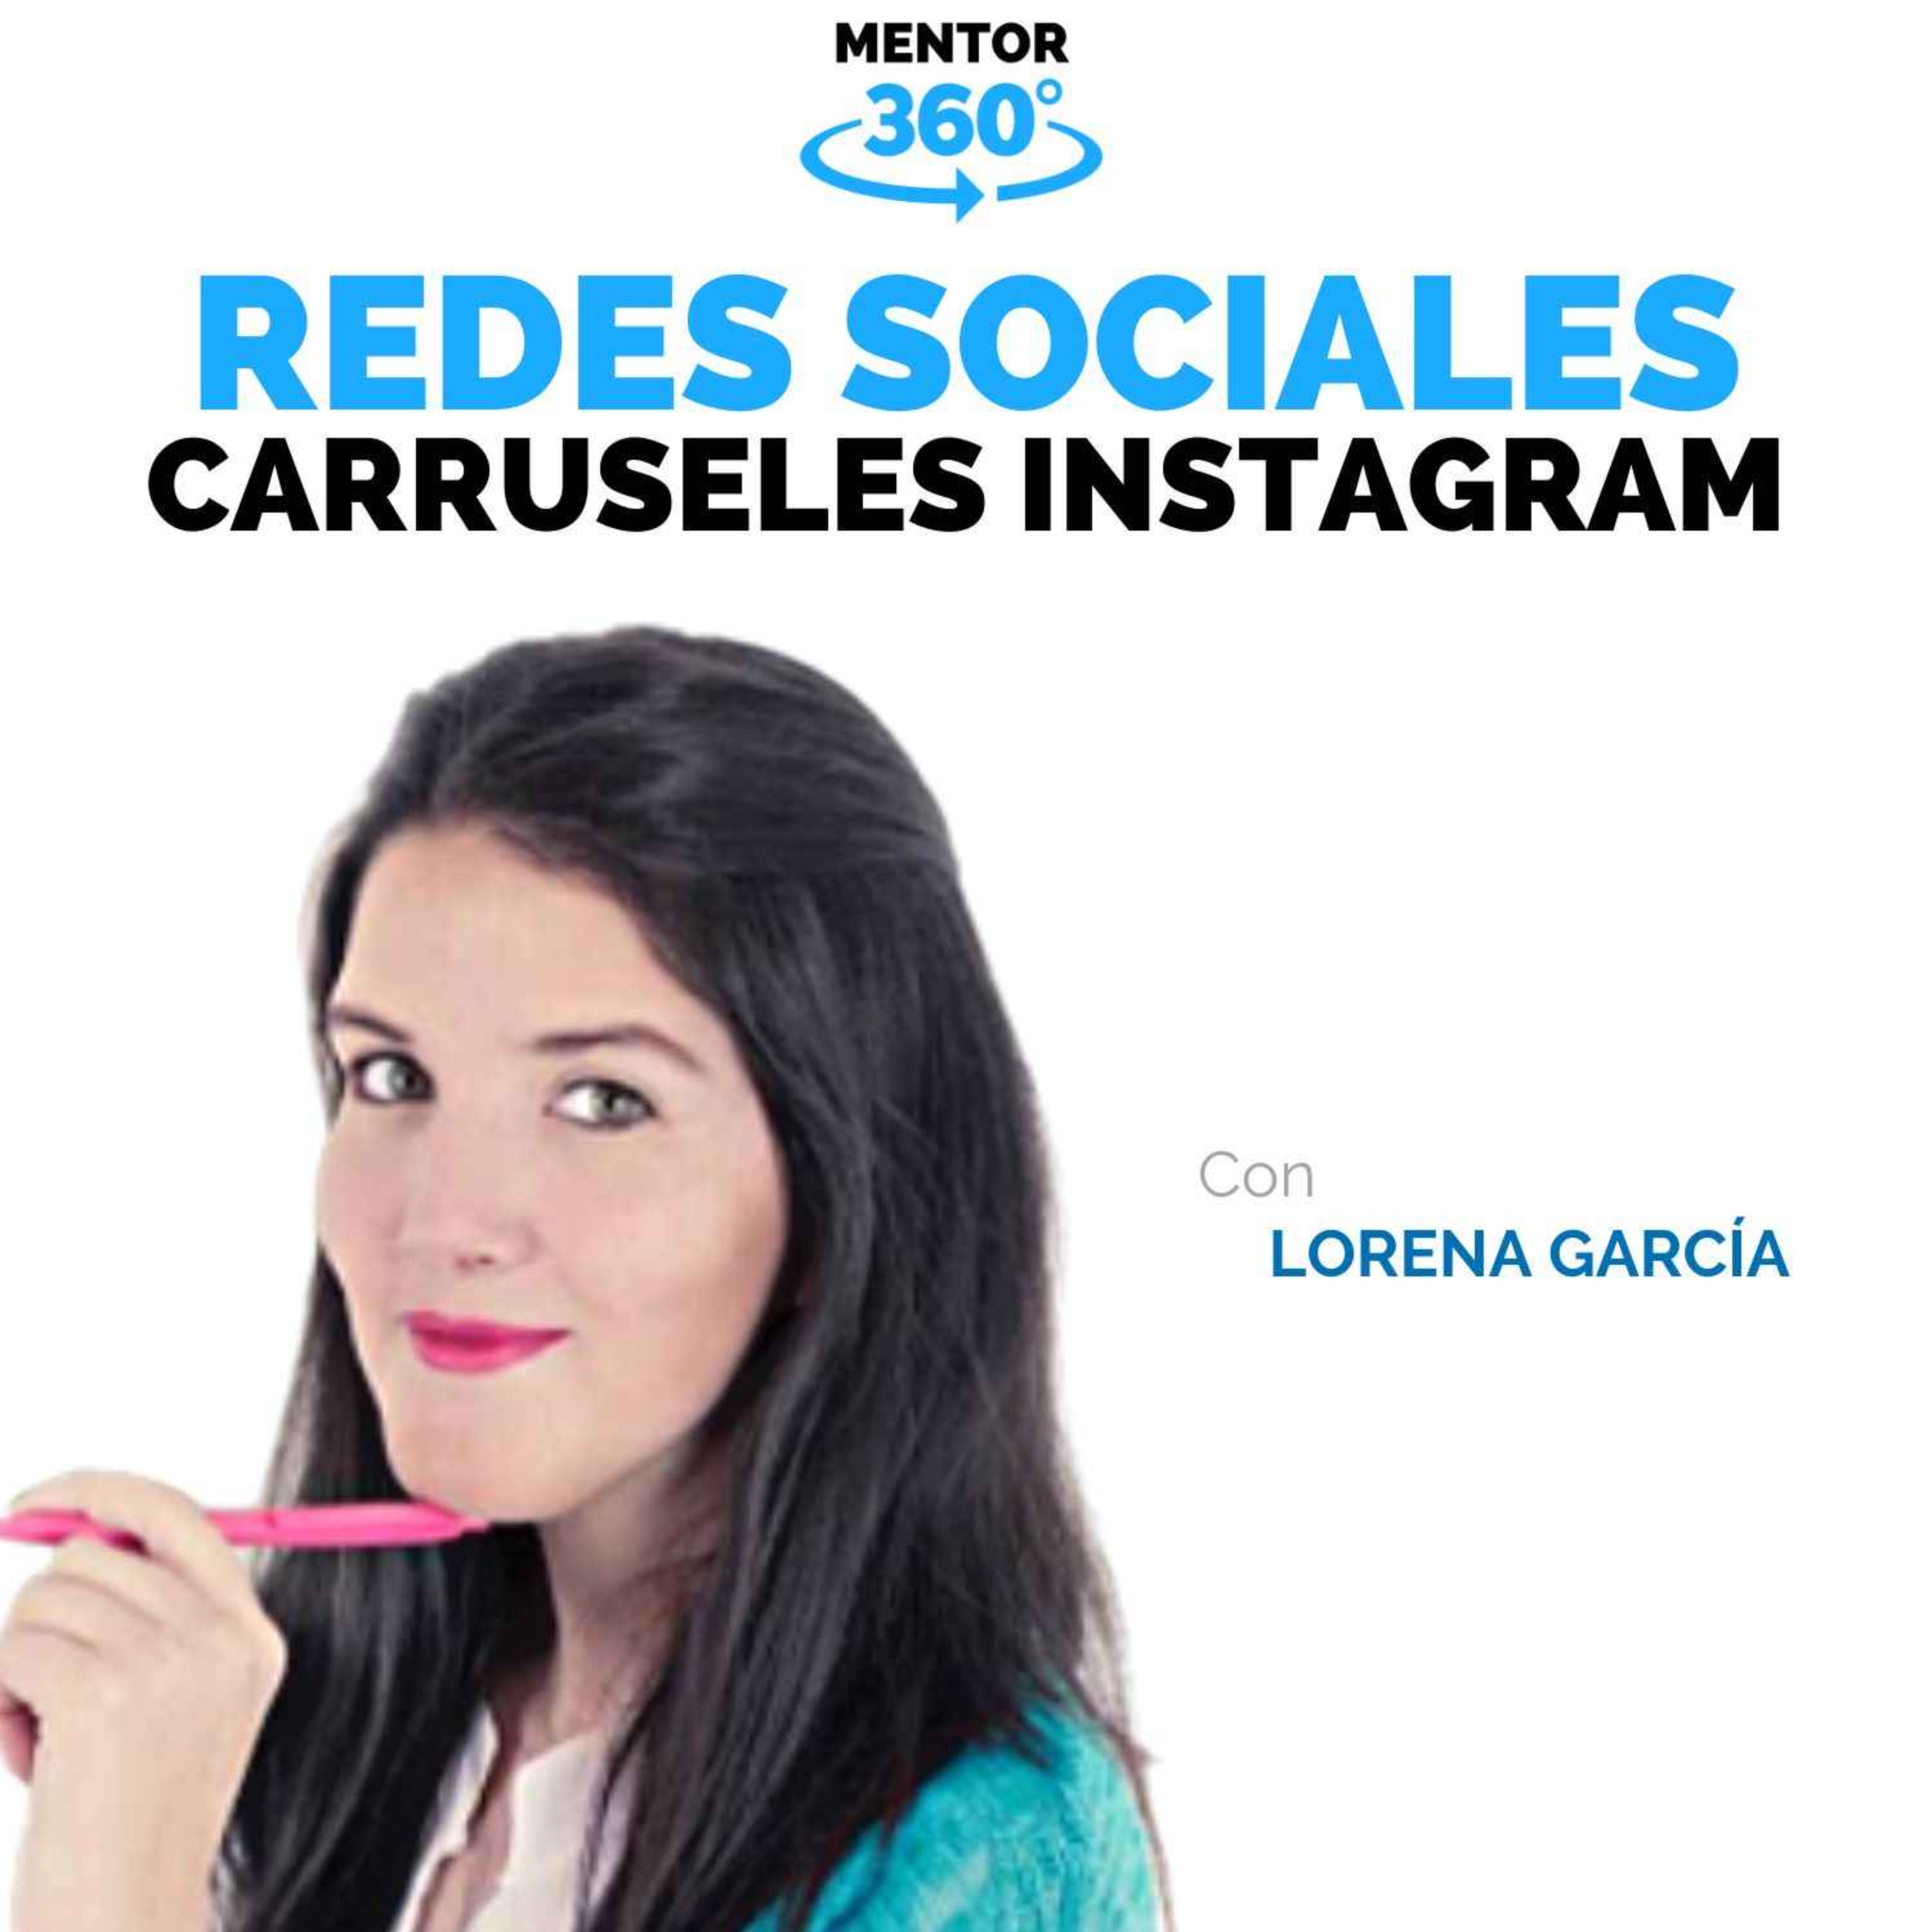 Carruseles en Instagram - Lorena García - Redes Sociales - MENTOR360